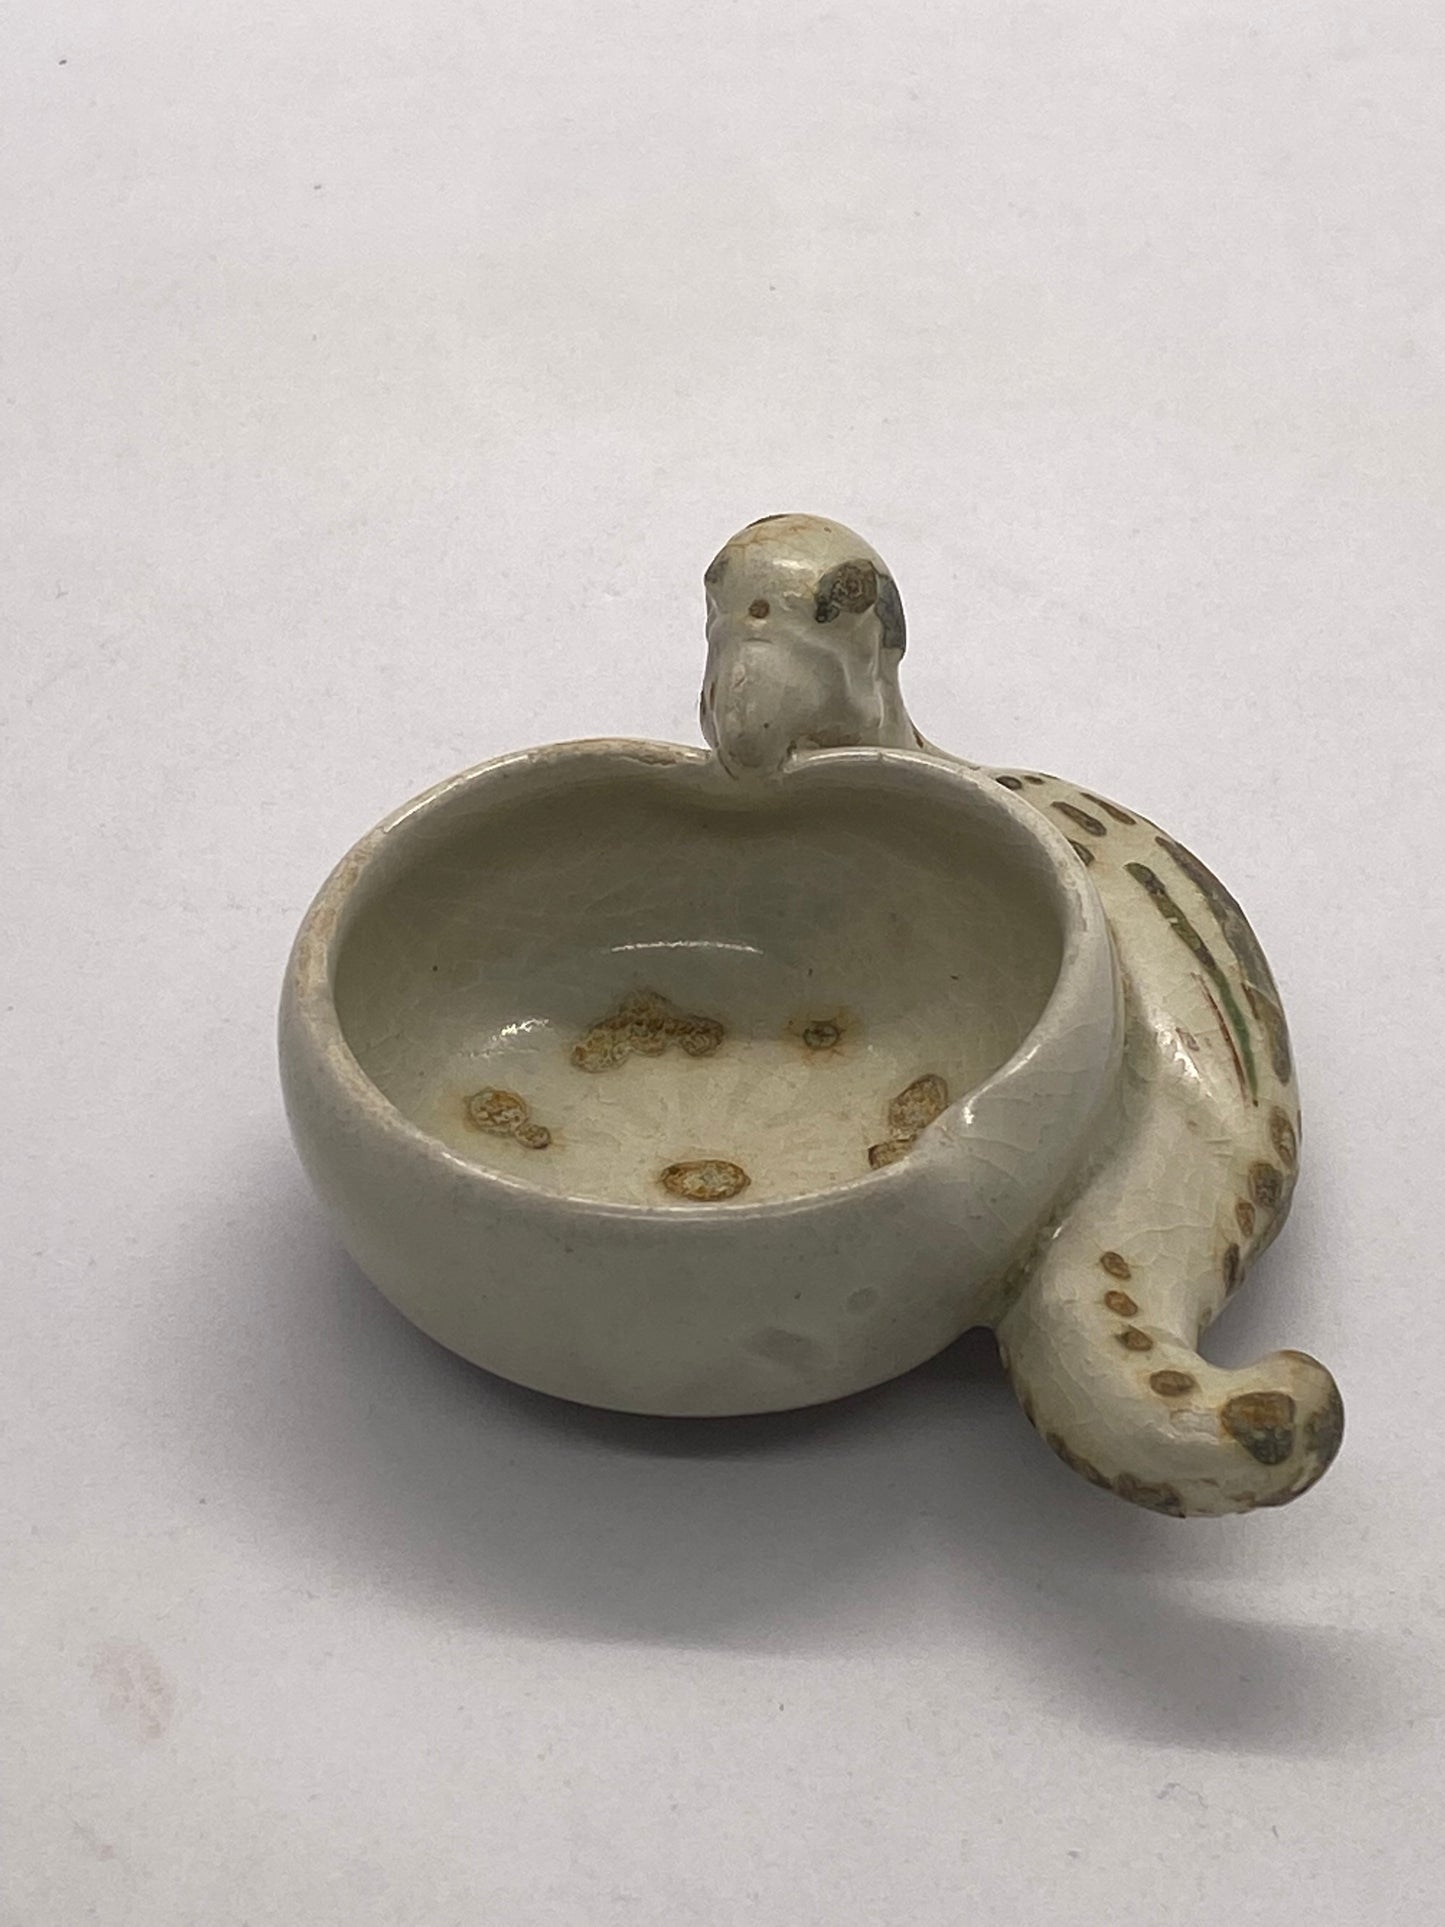 罕见的 15 世纪会安宝藏鹦鹉与桃子图案毛笔洗